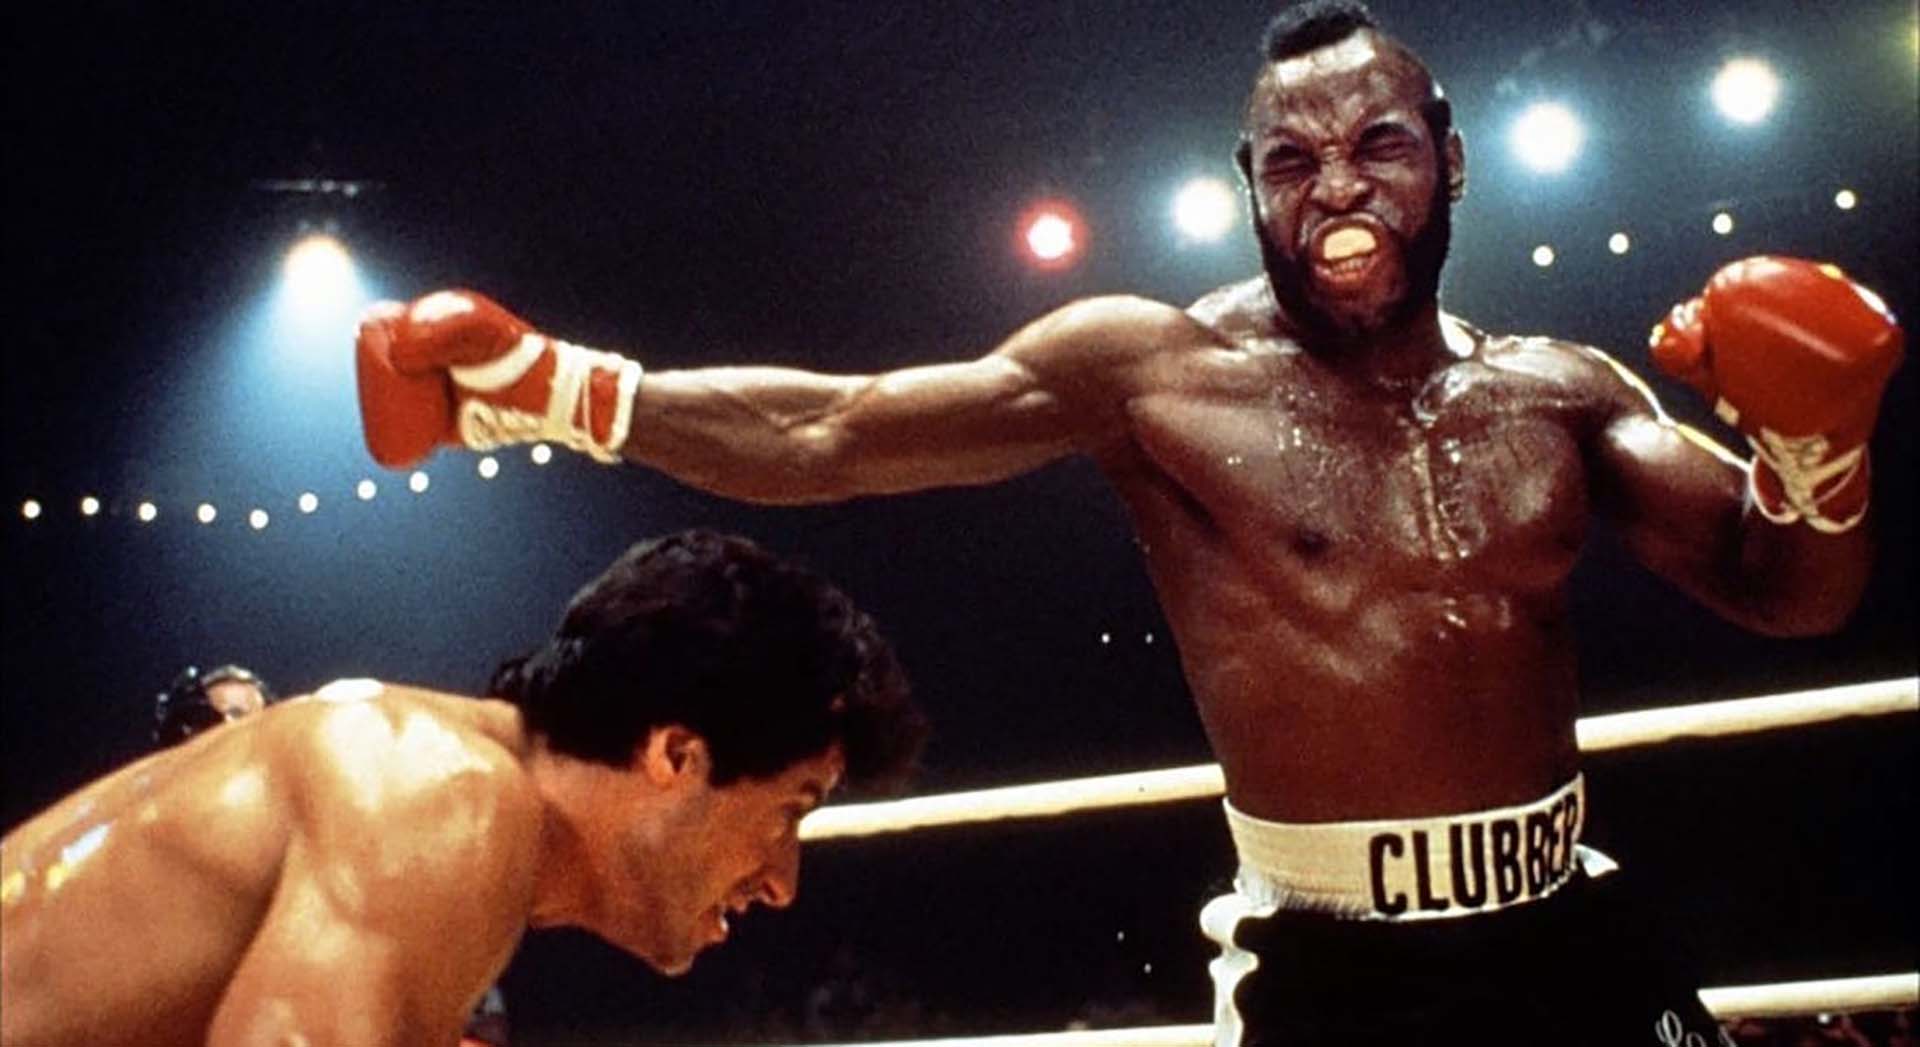 Stallone lo eligió para que fuera Clubber Lang en Rocky III. Fue su primer (y último) gran papel cinematográfico